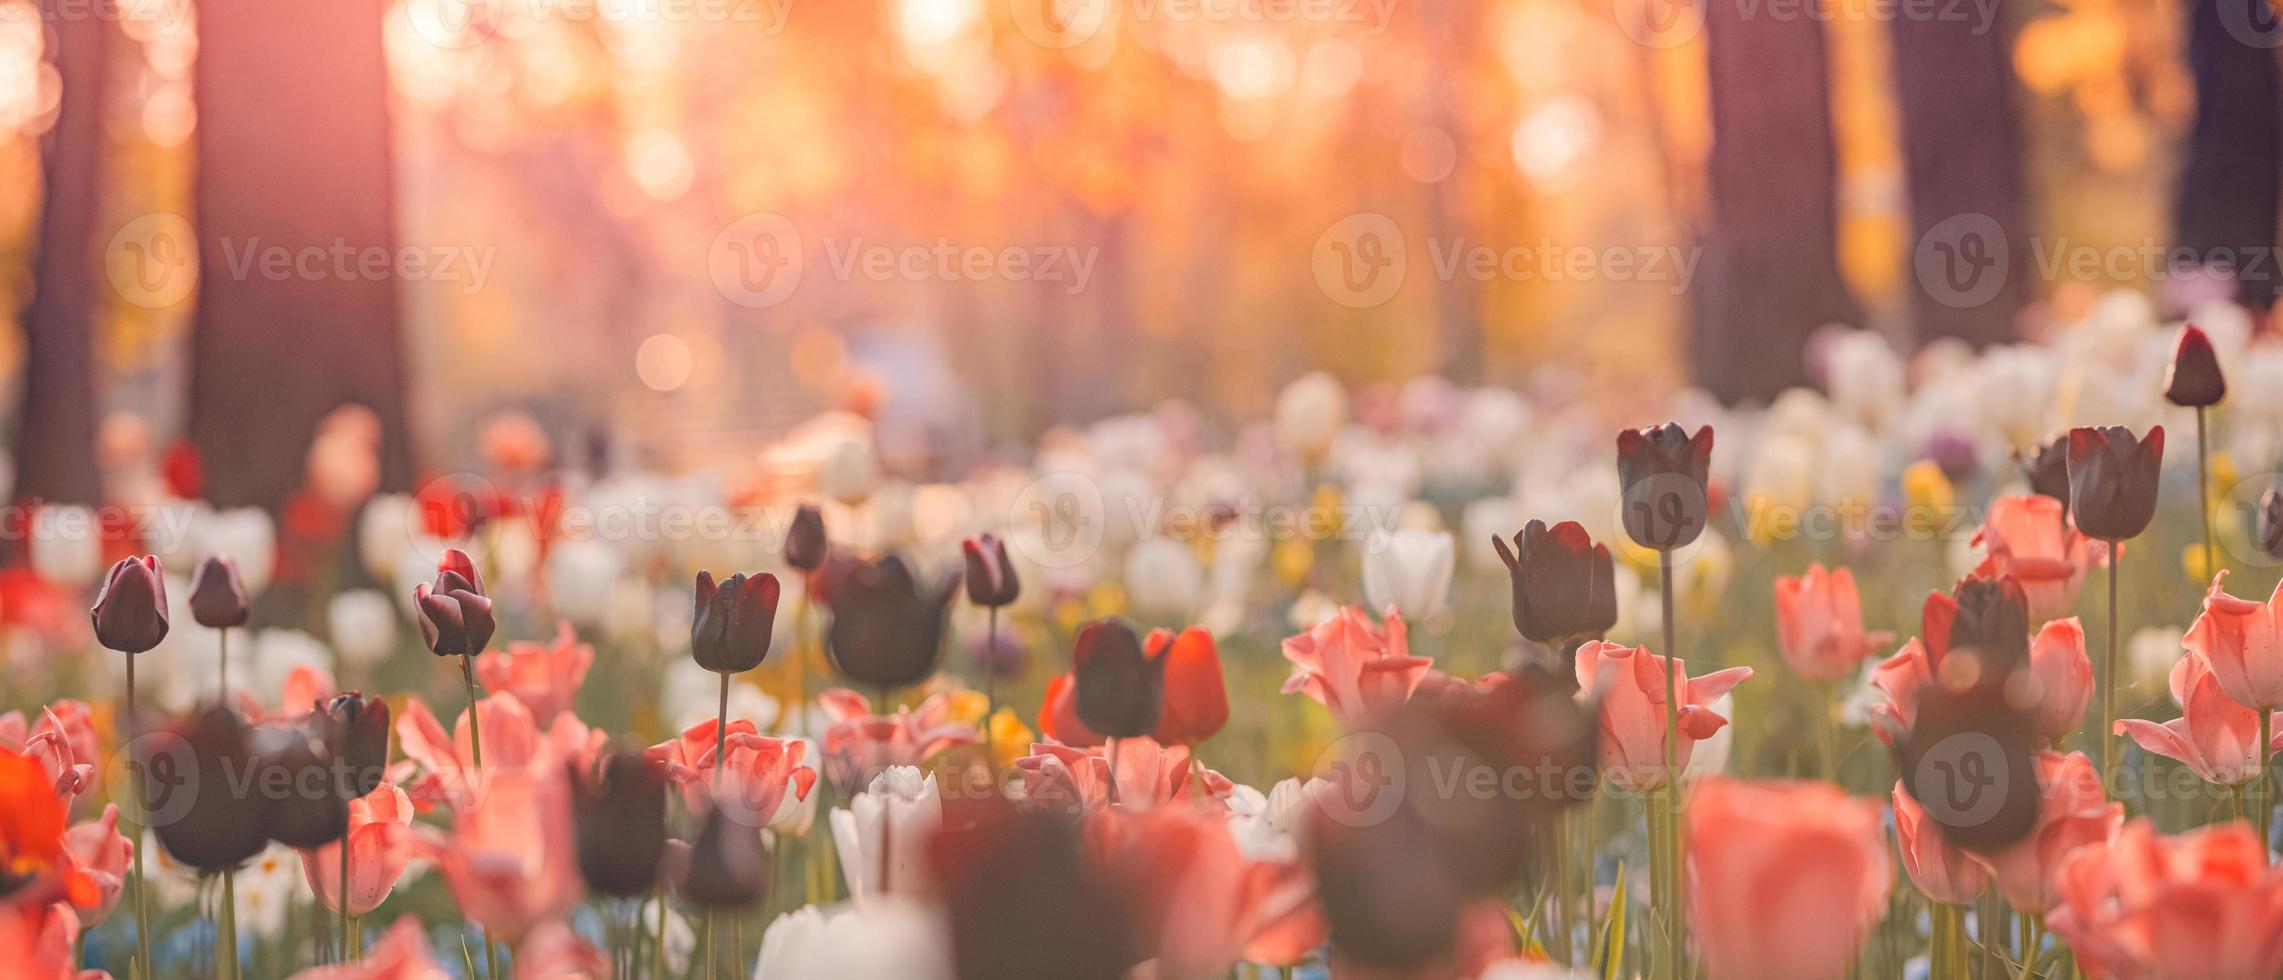 skön bukett panorama av röd vit och rosa tulpaner i vår natur för kort design och webb baner. lugn närbild, idyllisk romantisk kärlek blommig natur landskap. abstrakt suddig frodig lövverk foto